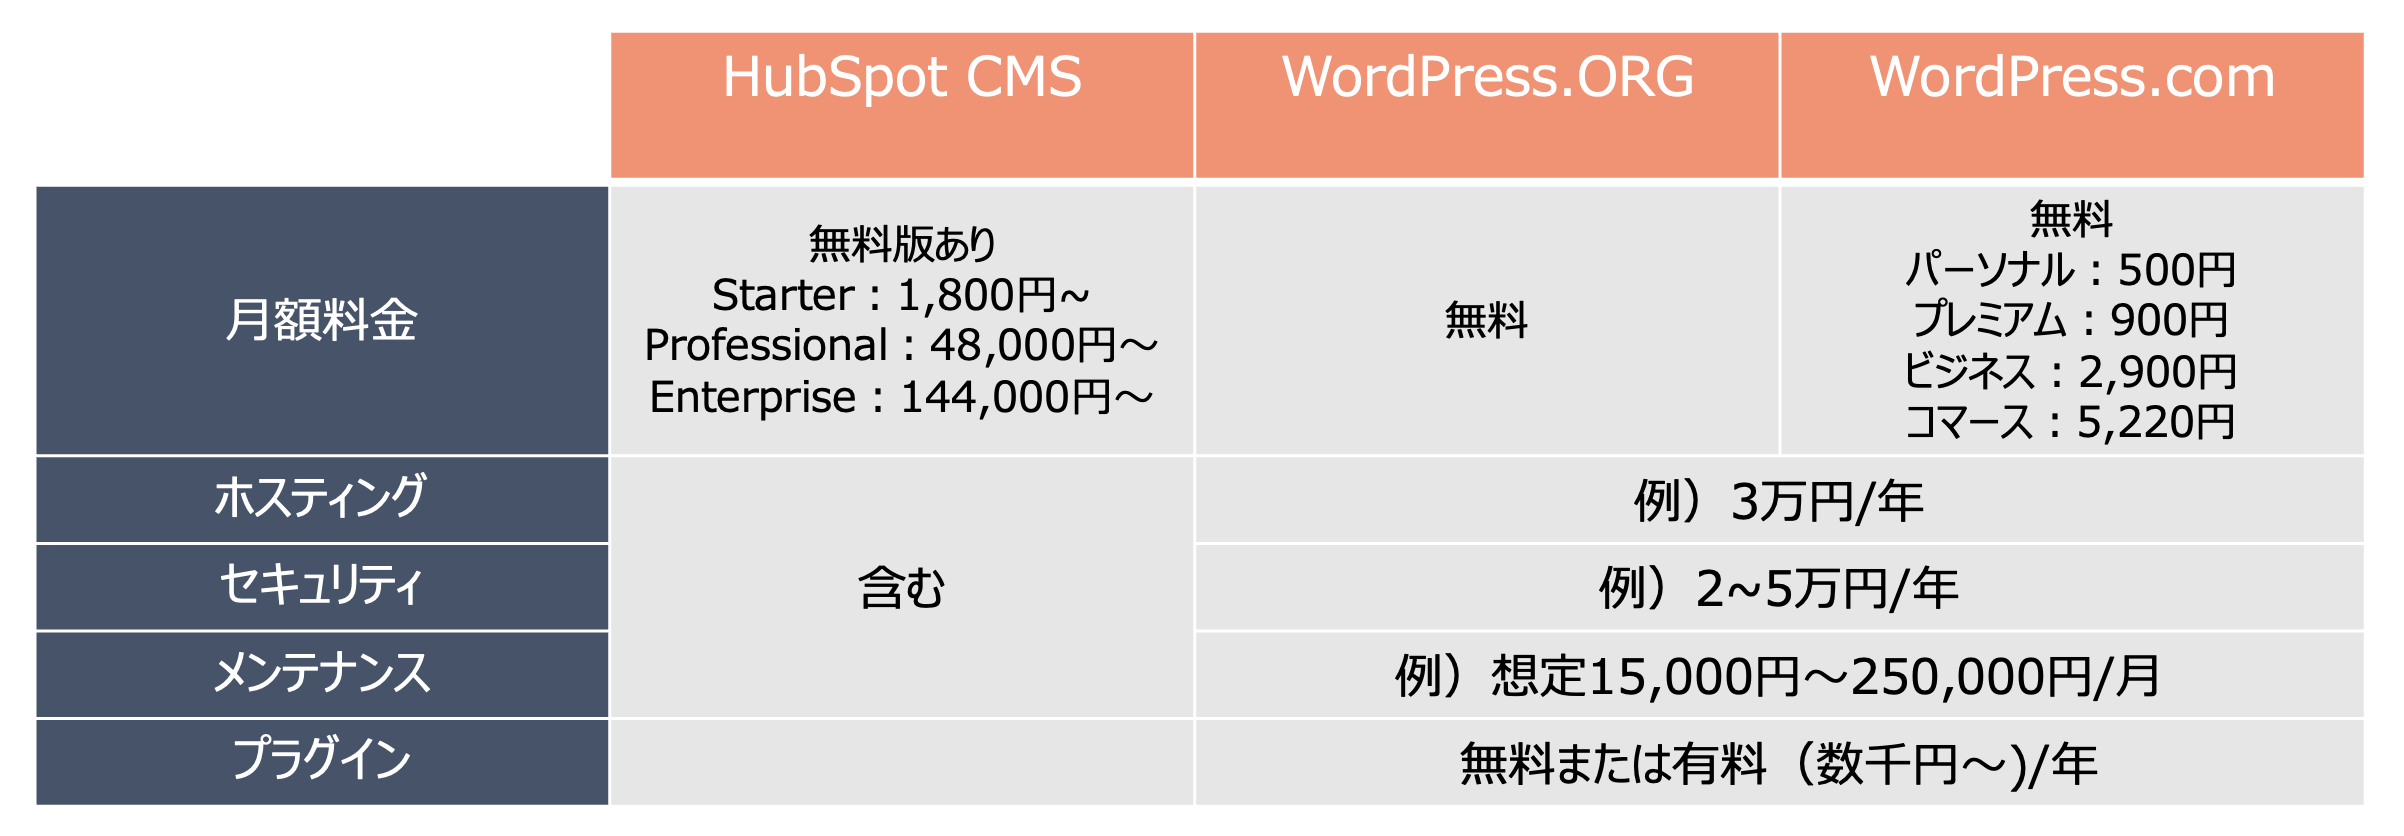 HubSpot CMSとWordPress料金比較